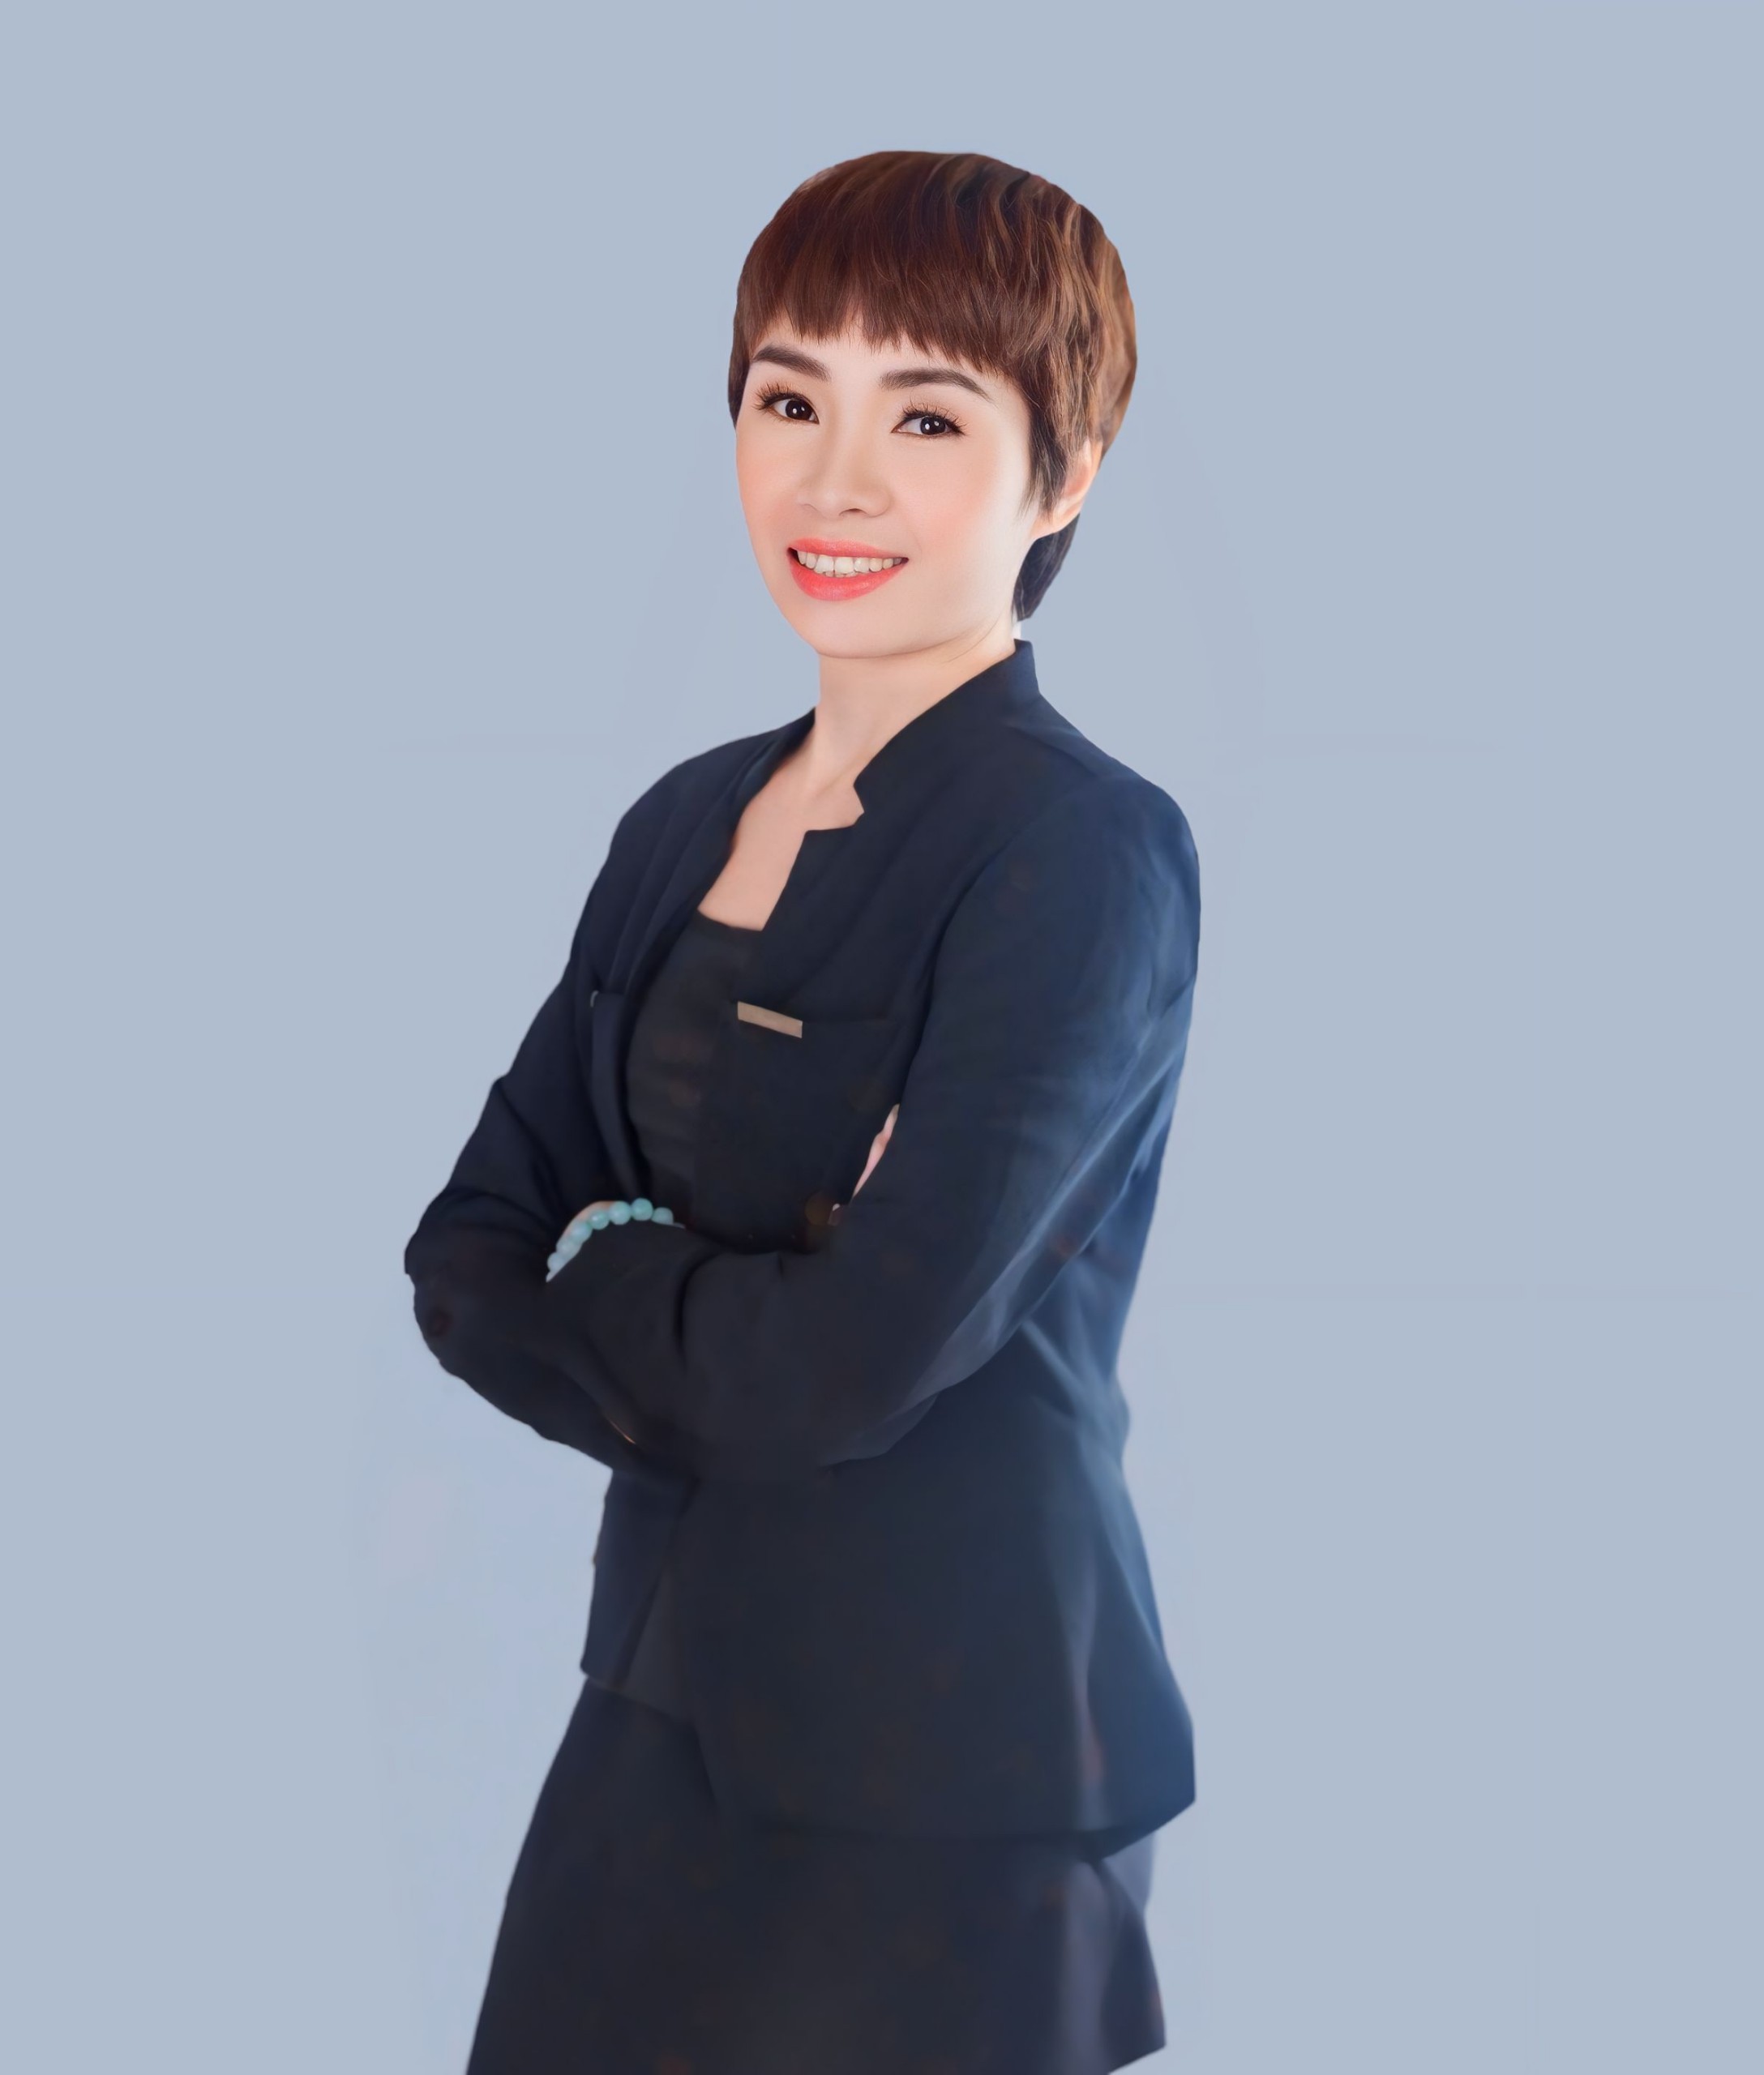 Ms. Lê Thị Doan